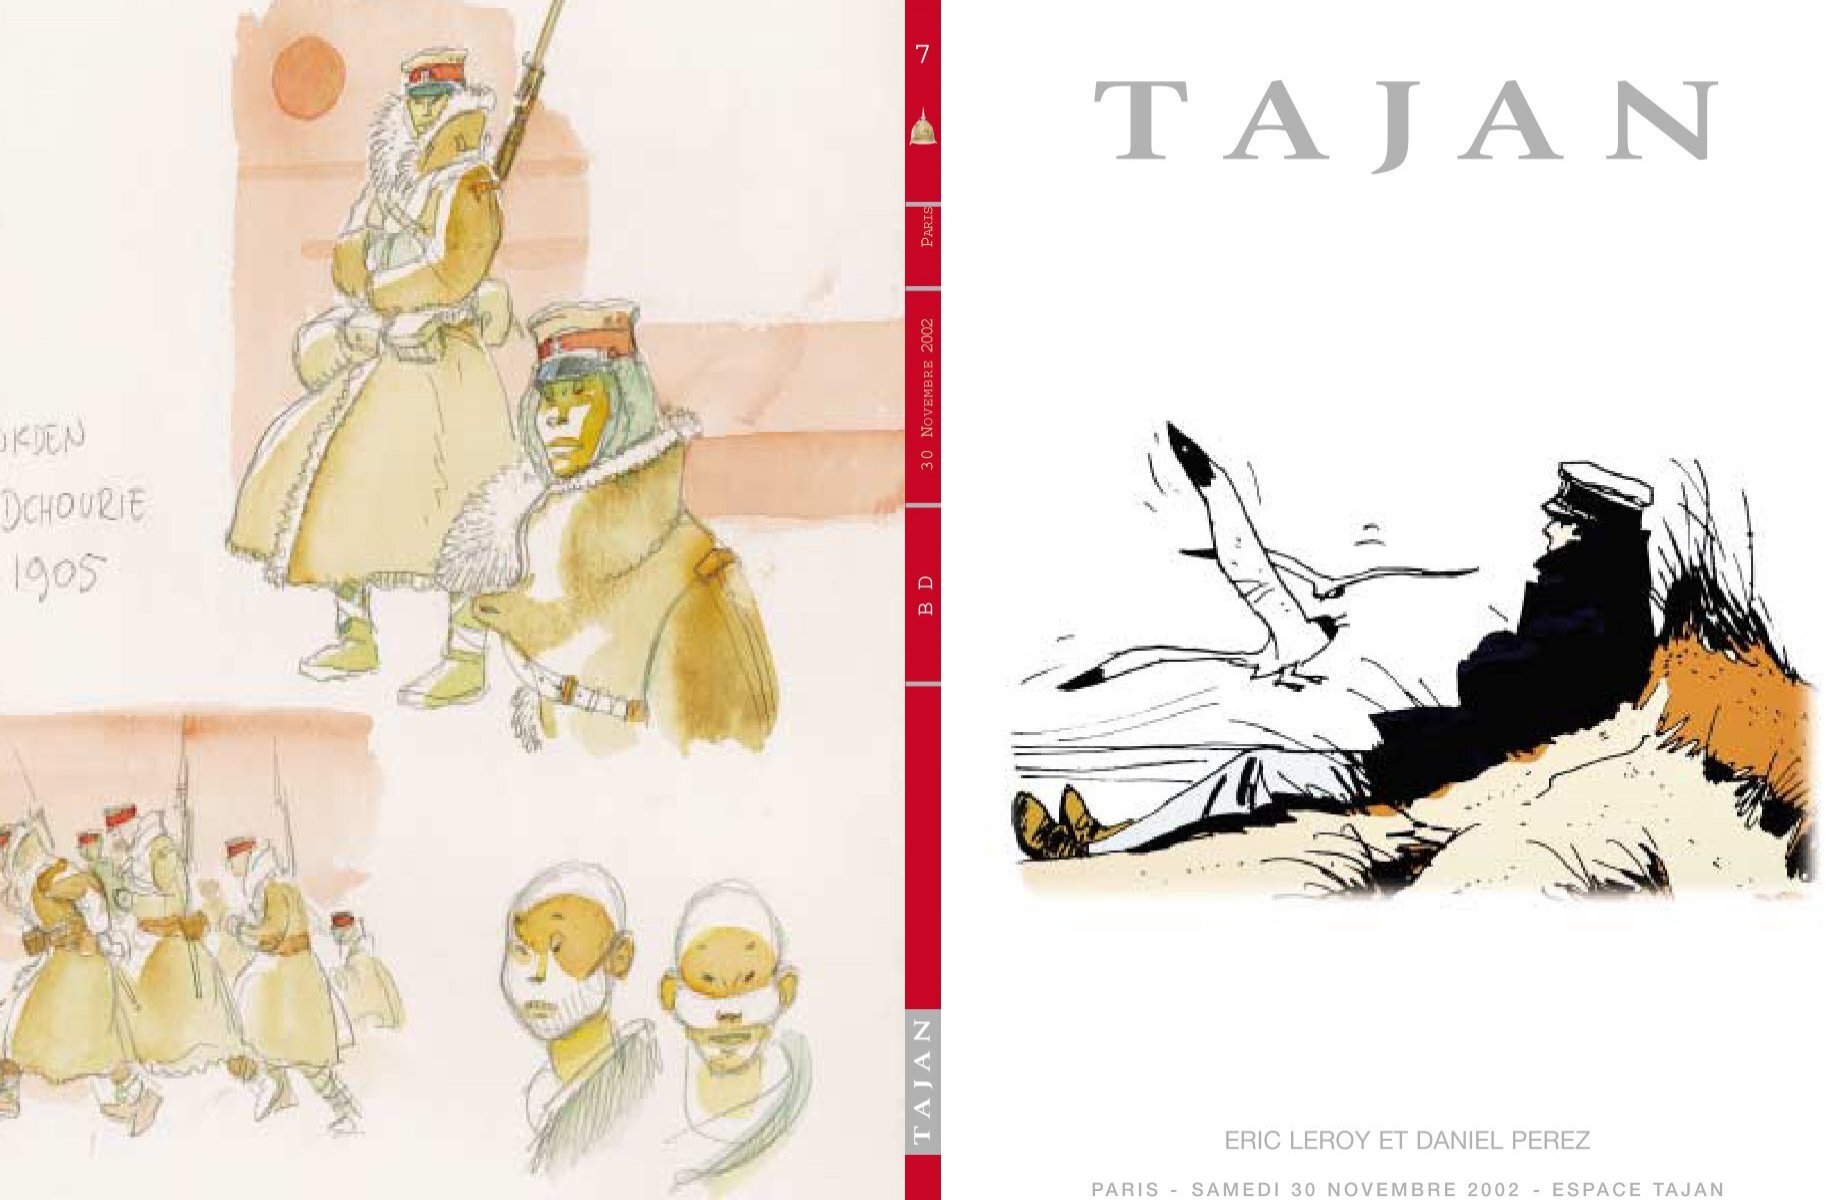 Tintin T2 - Tintin au Congo colorisé - C - TL - 500 exemplaires